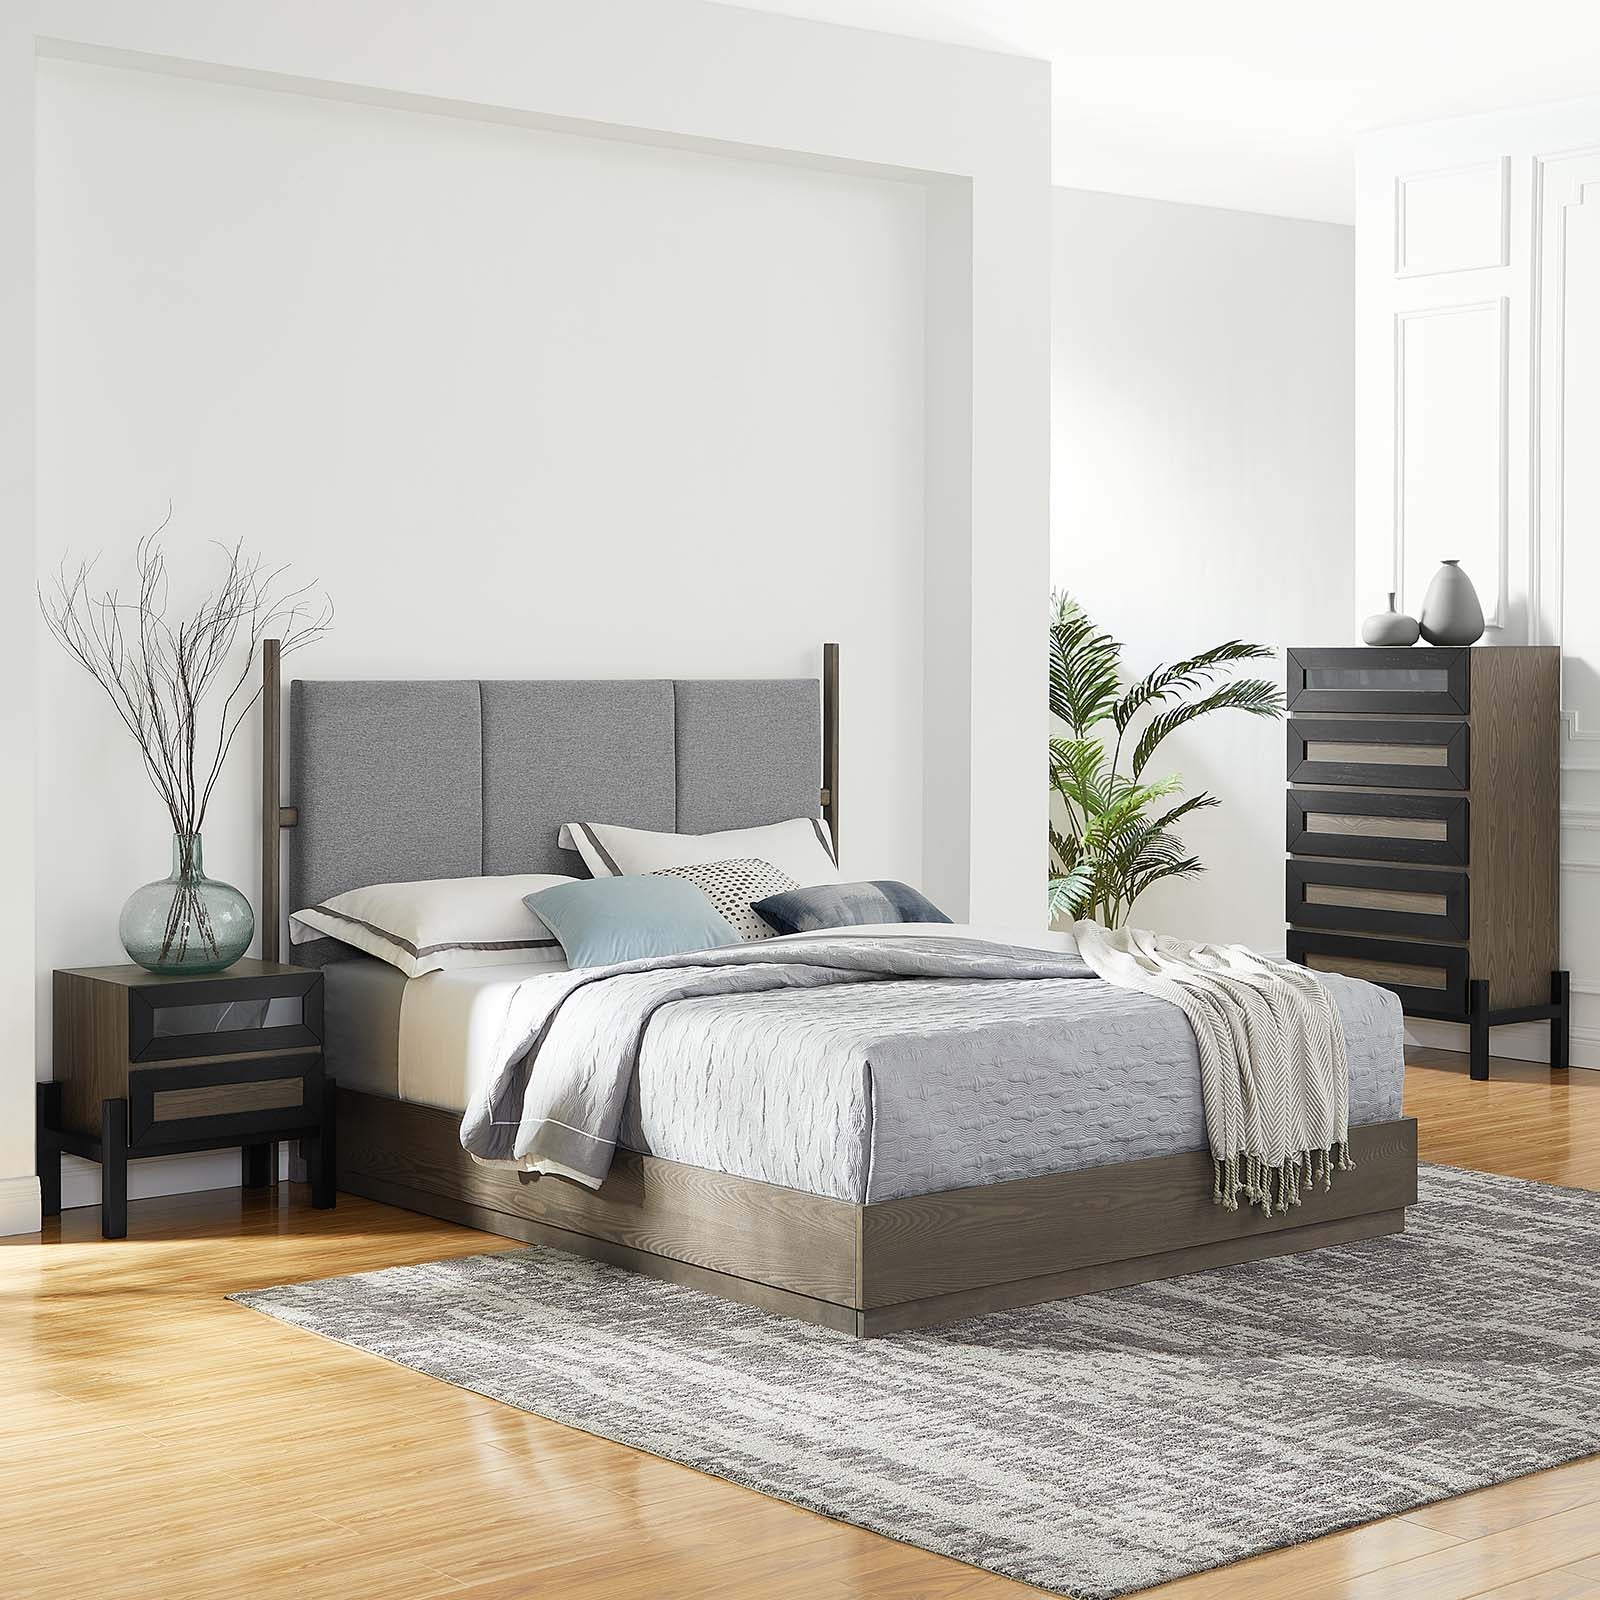 Merritt 3 Piece Upholstered Bedroom Set - East Shore Modern Home Furnishings